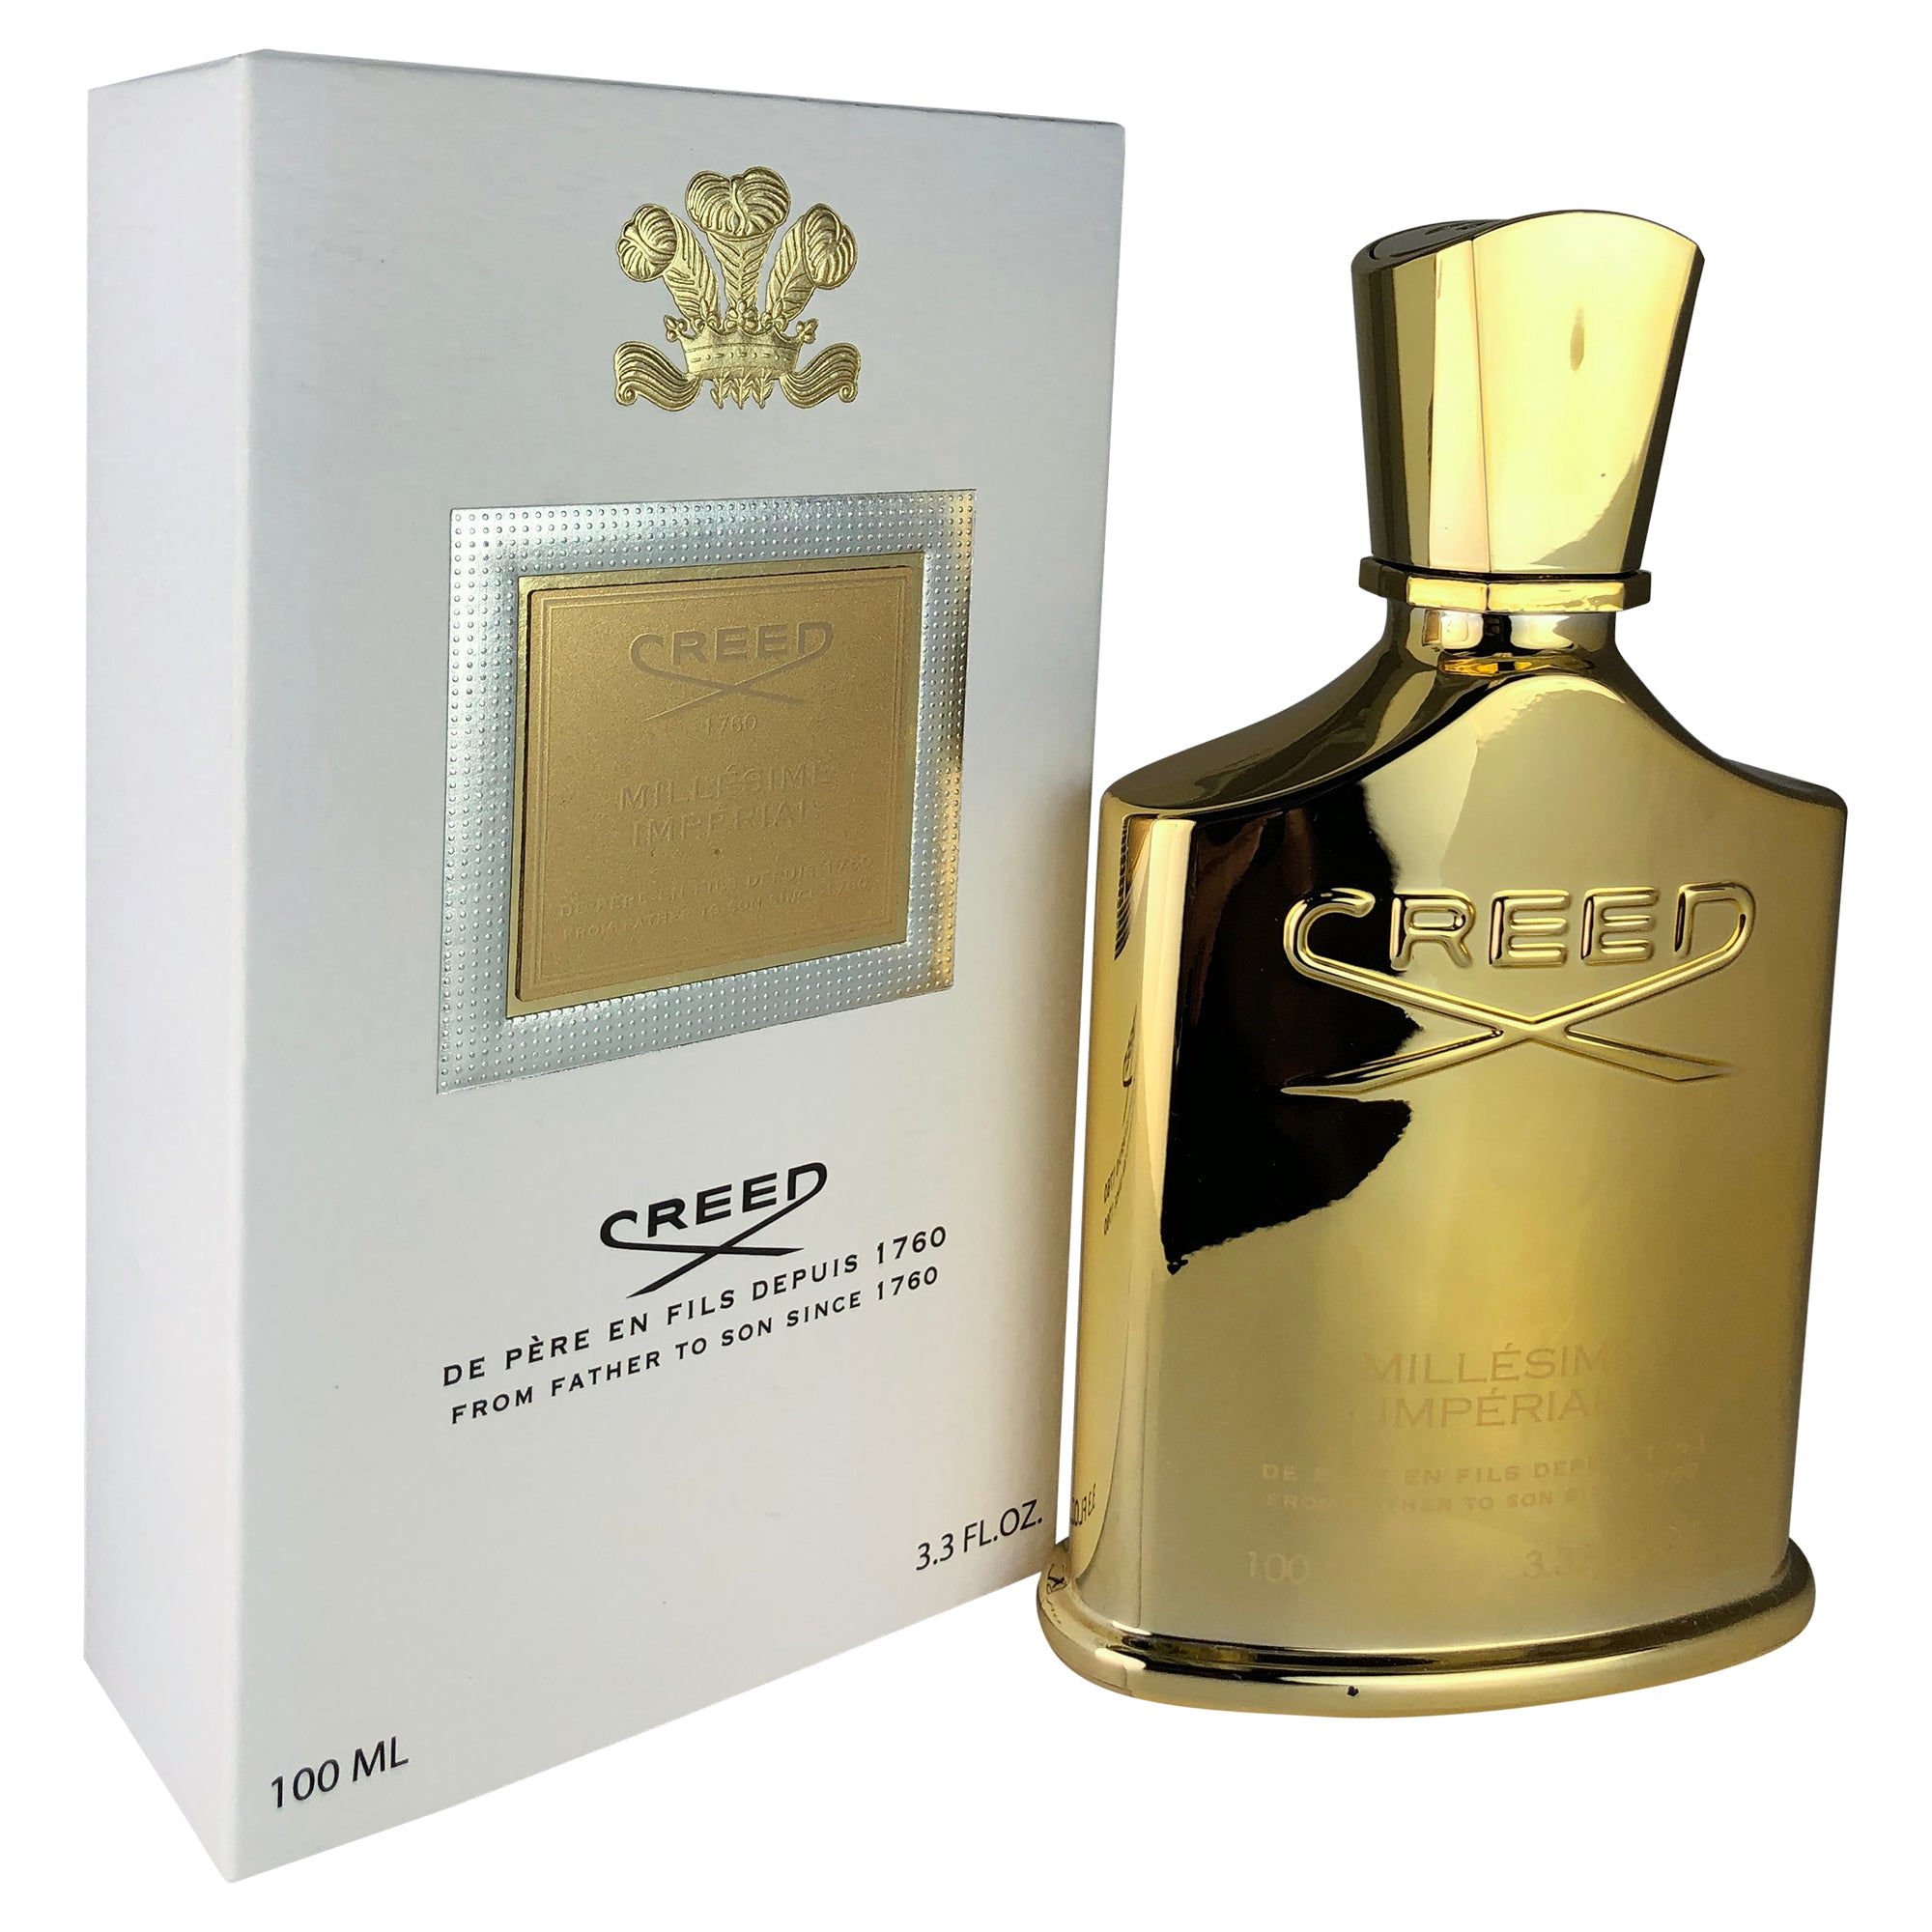 Creed Milleseme Imperial Eau de Parfum for Men